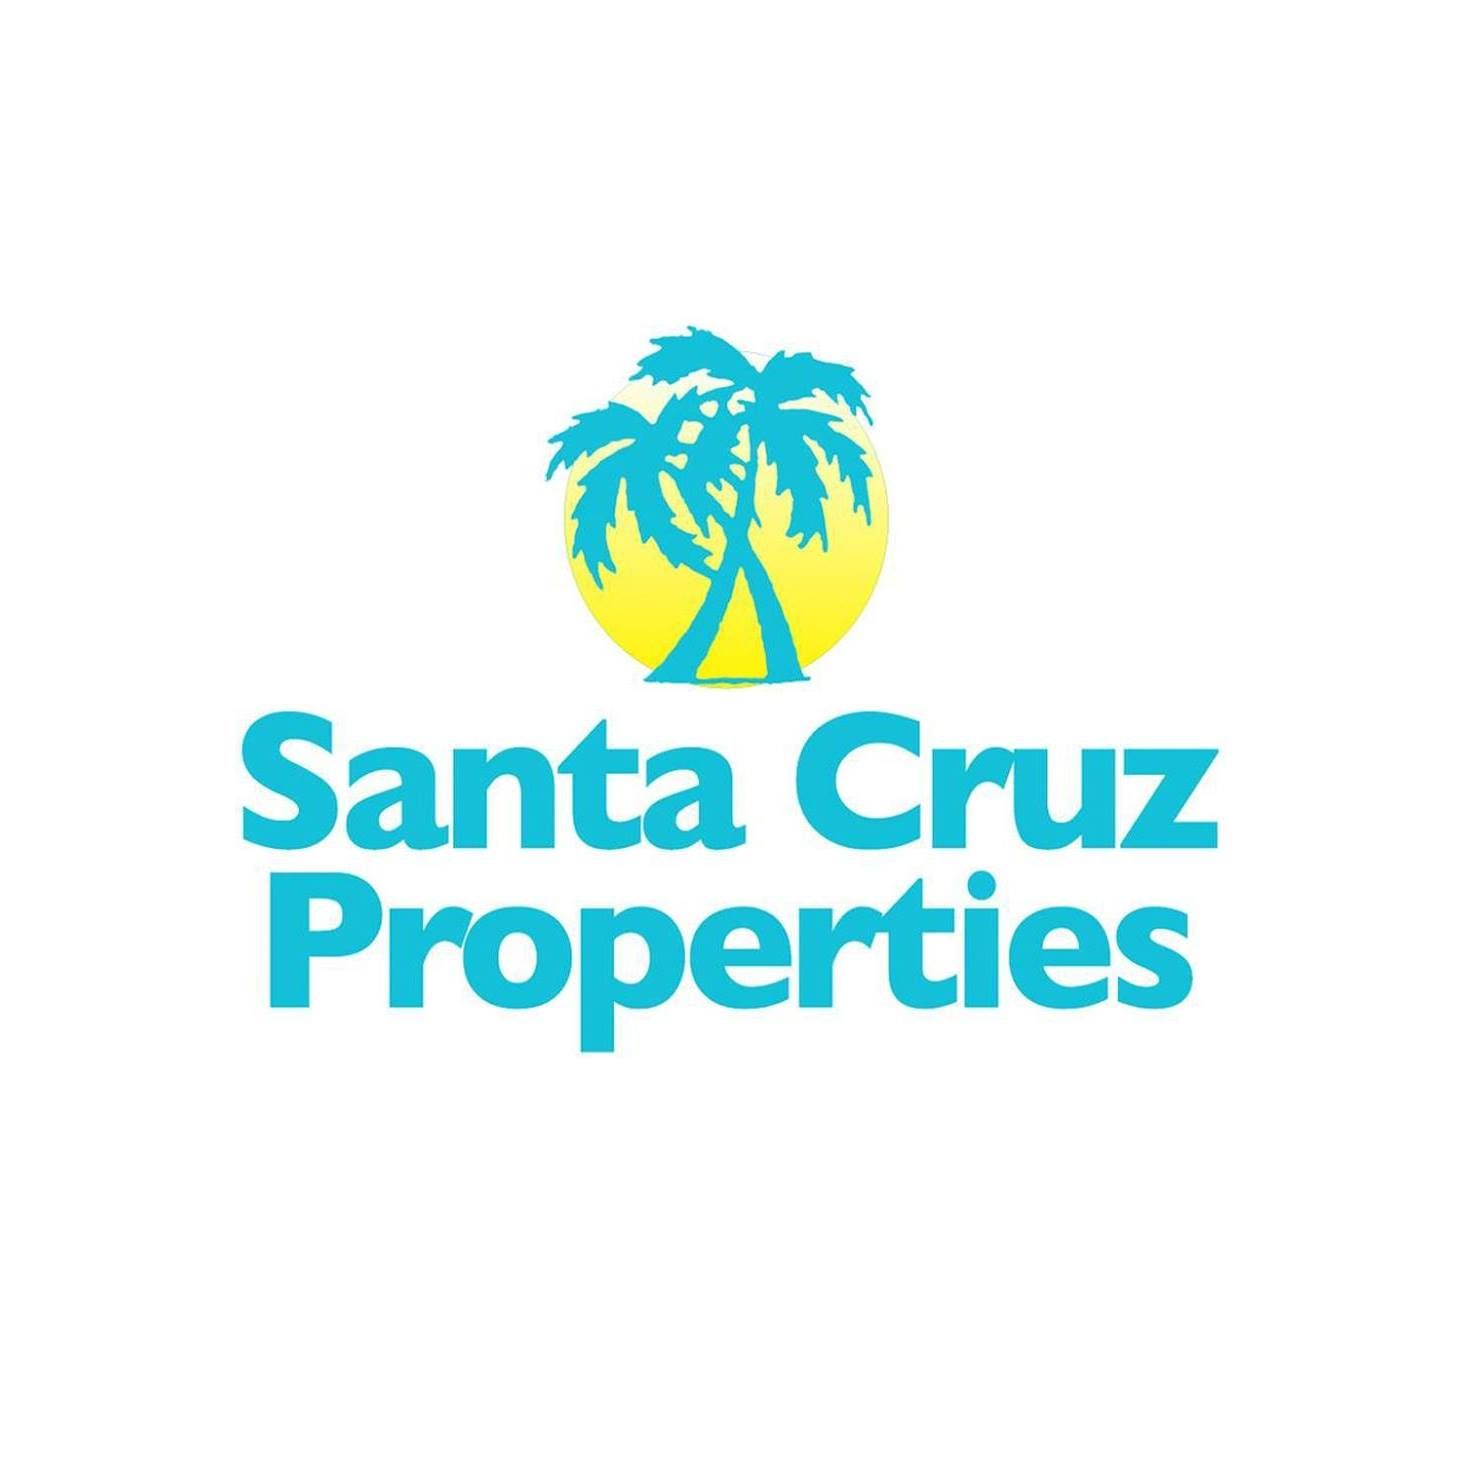 Santa Cruz Properties - Land For Sale